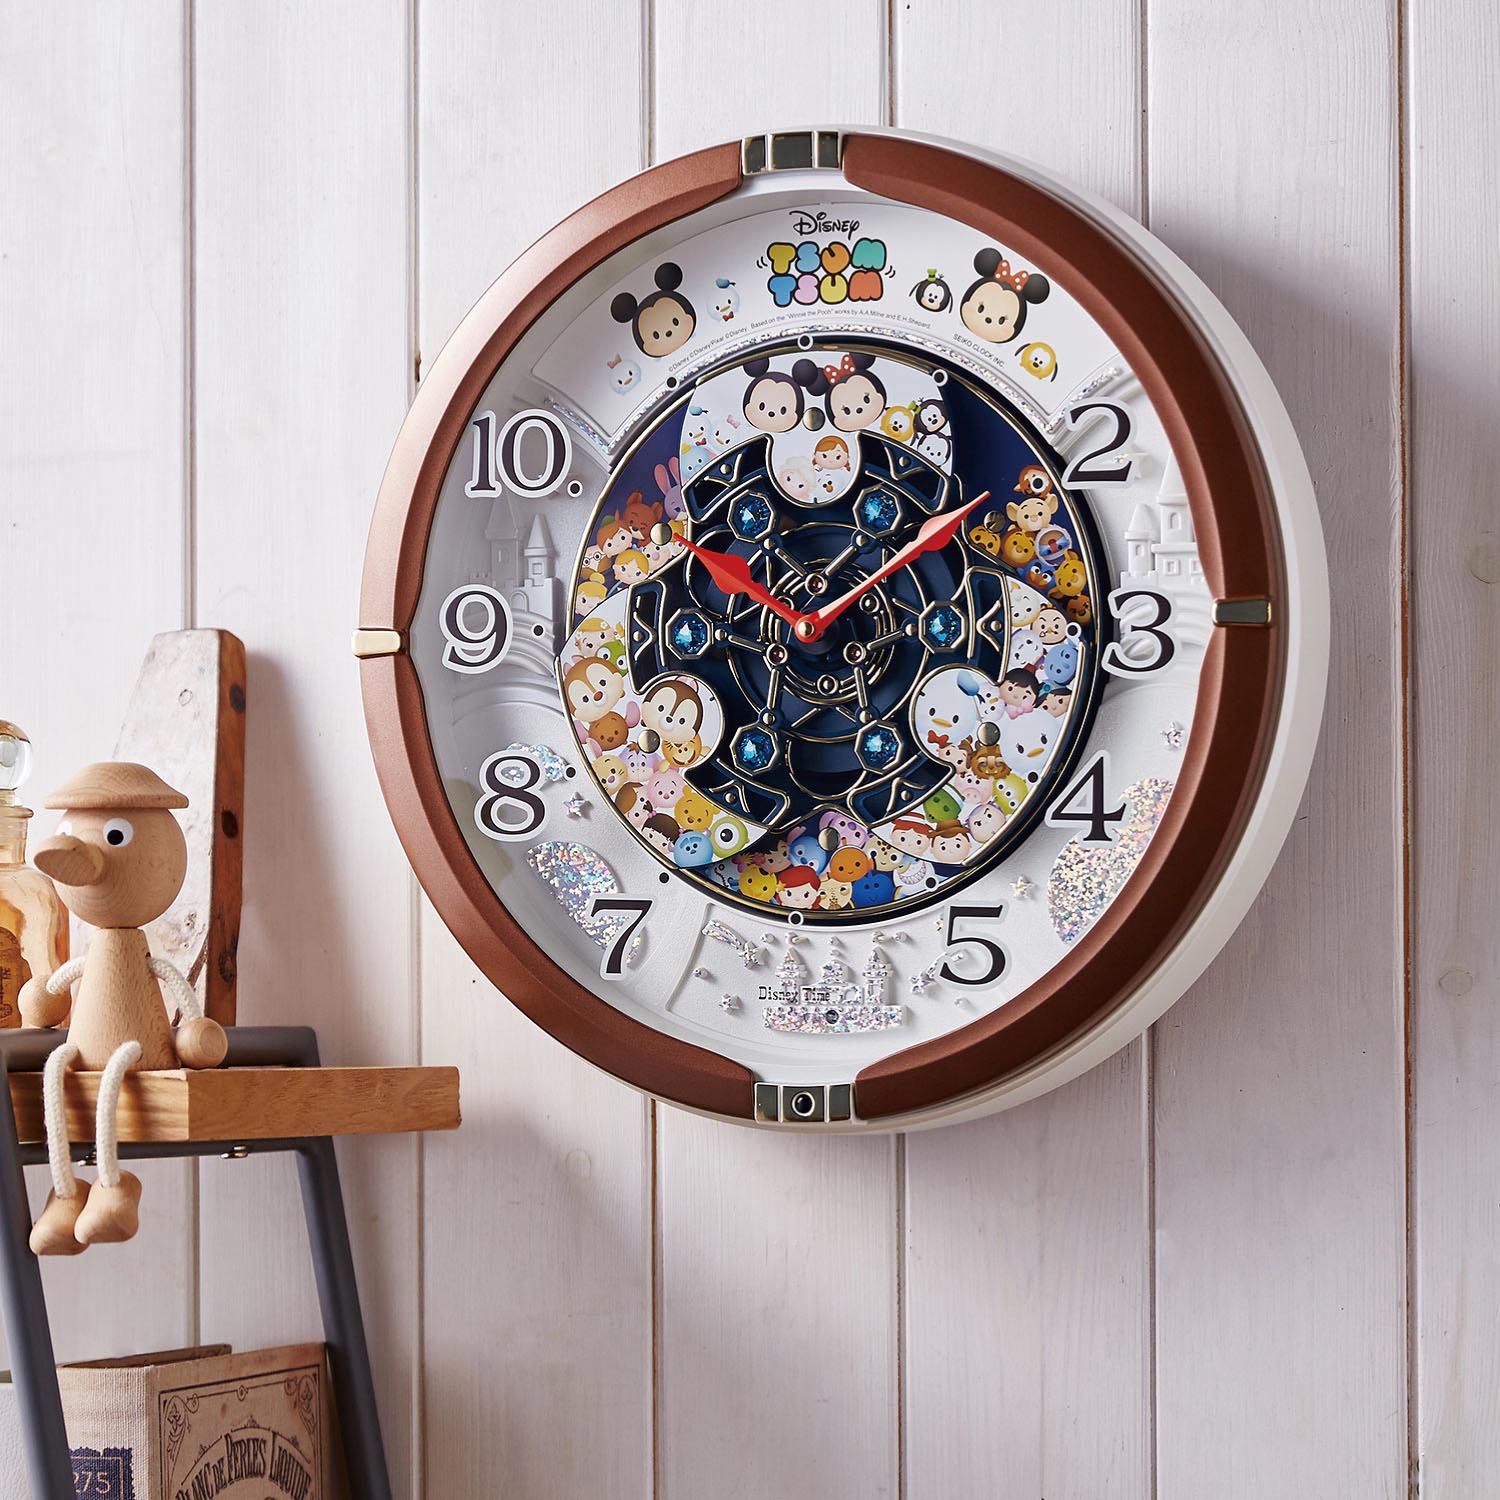 【ディズニー/Disney】時計を見る度に楽しい!壁掛けからくり時計「ディズニー ツムツム」